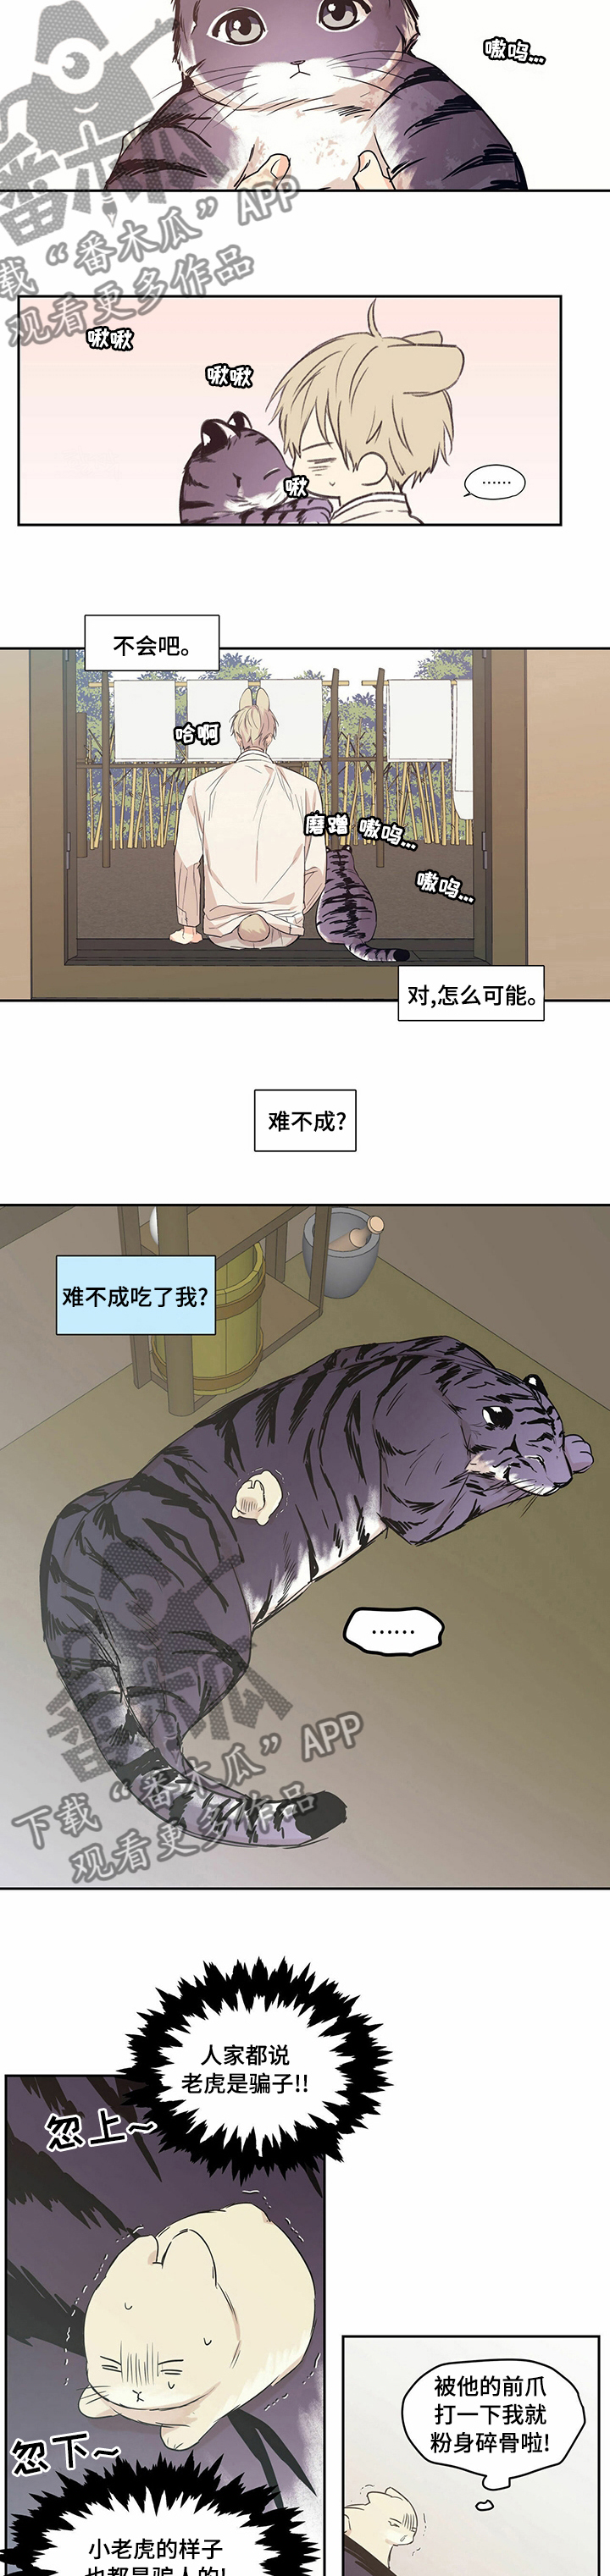 第85章【番外】奇怪的老虎5